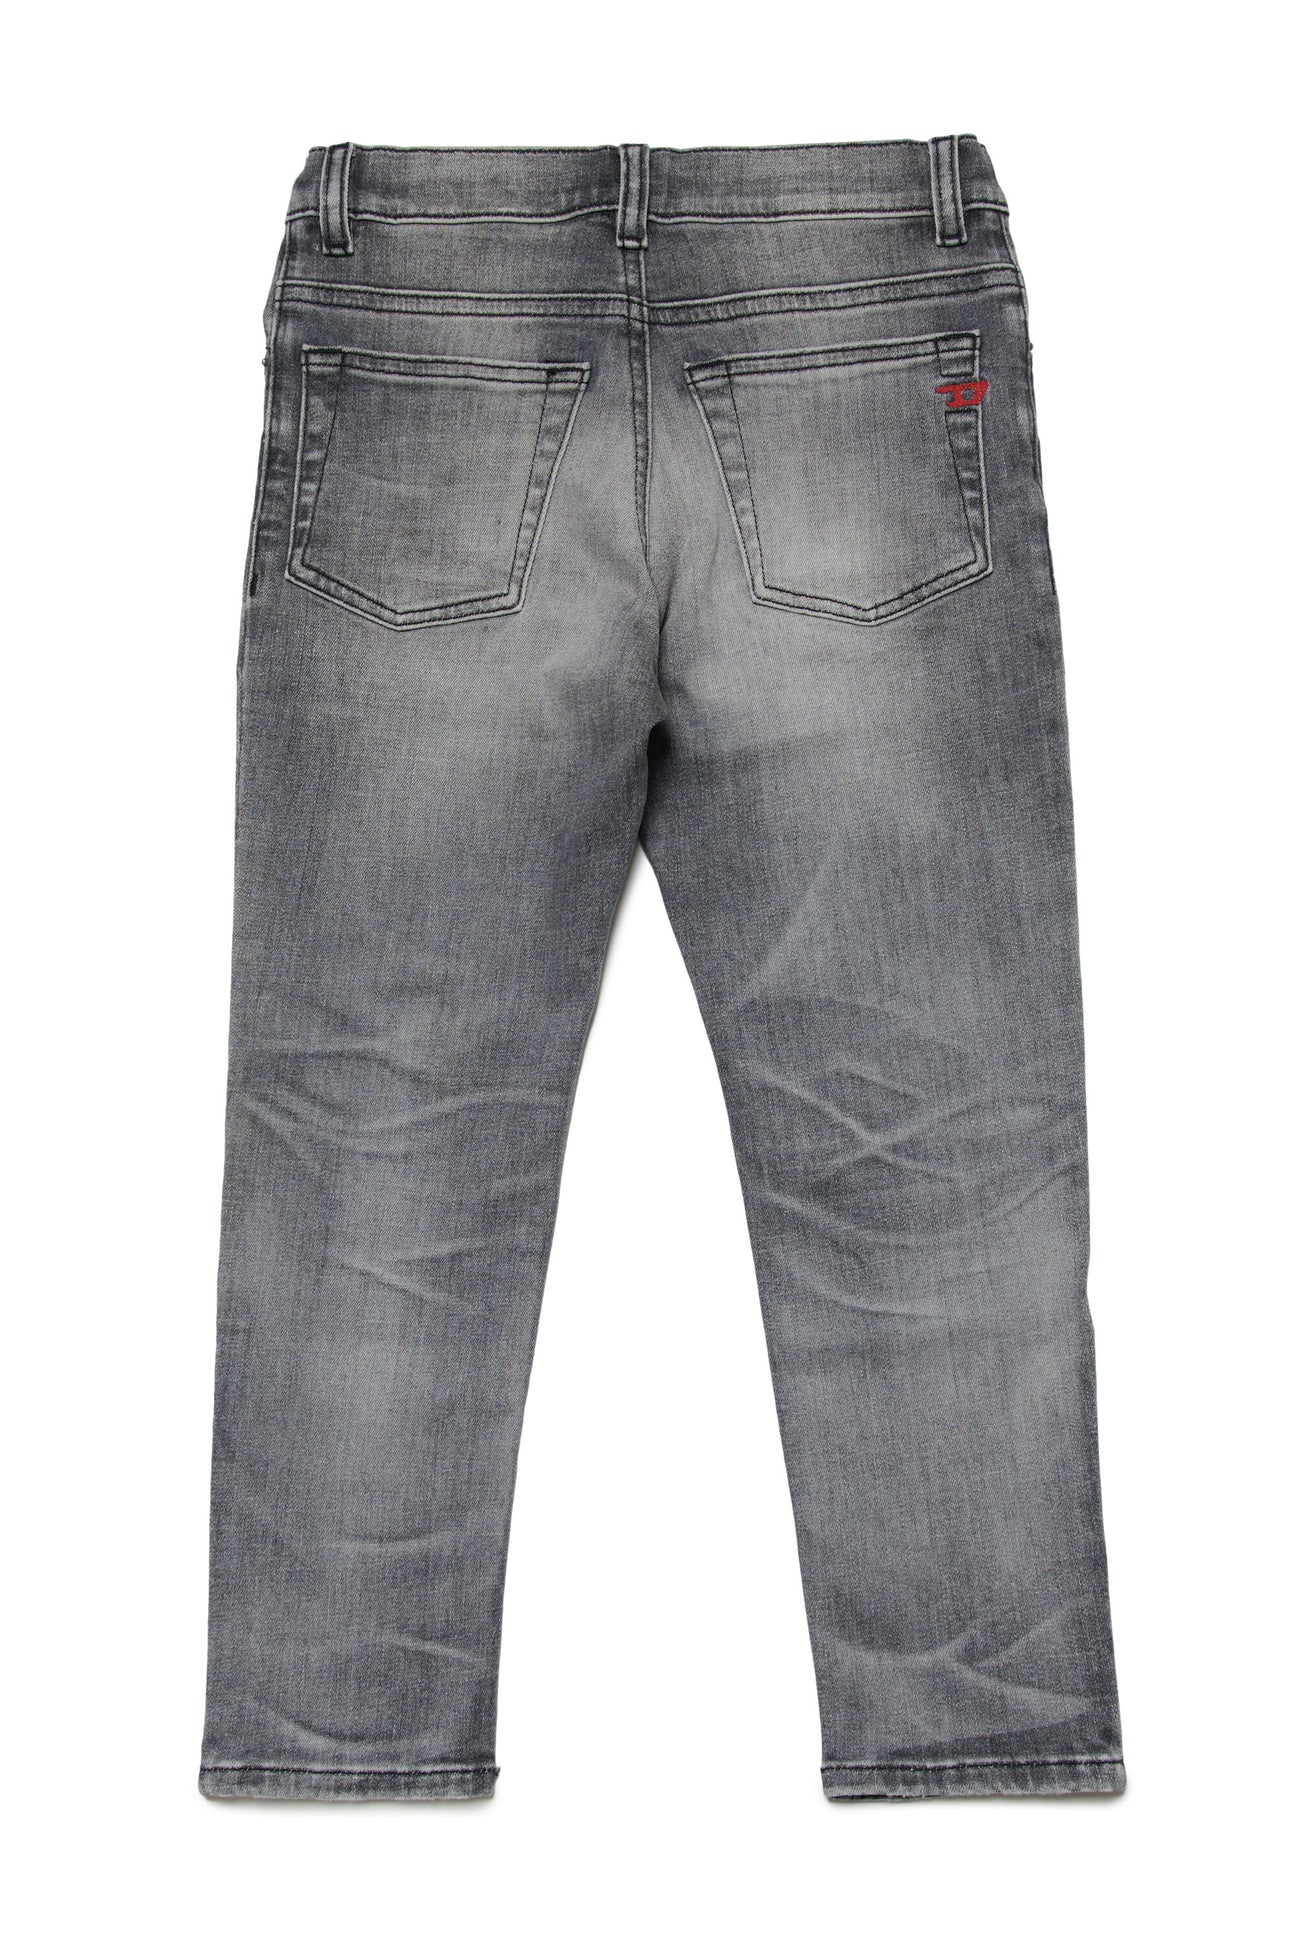 Jeans regular grigio sfumato - 2005 Jeans regular grigio sfumato - 2005